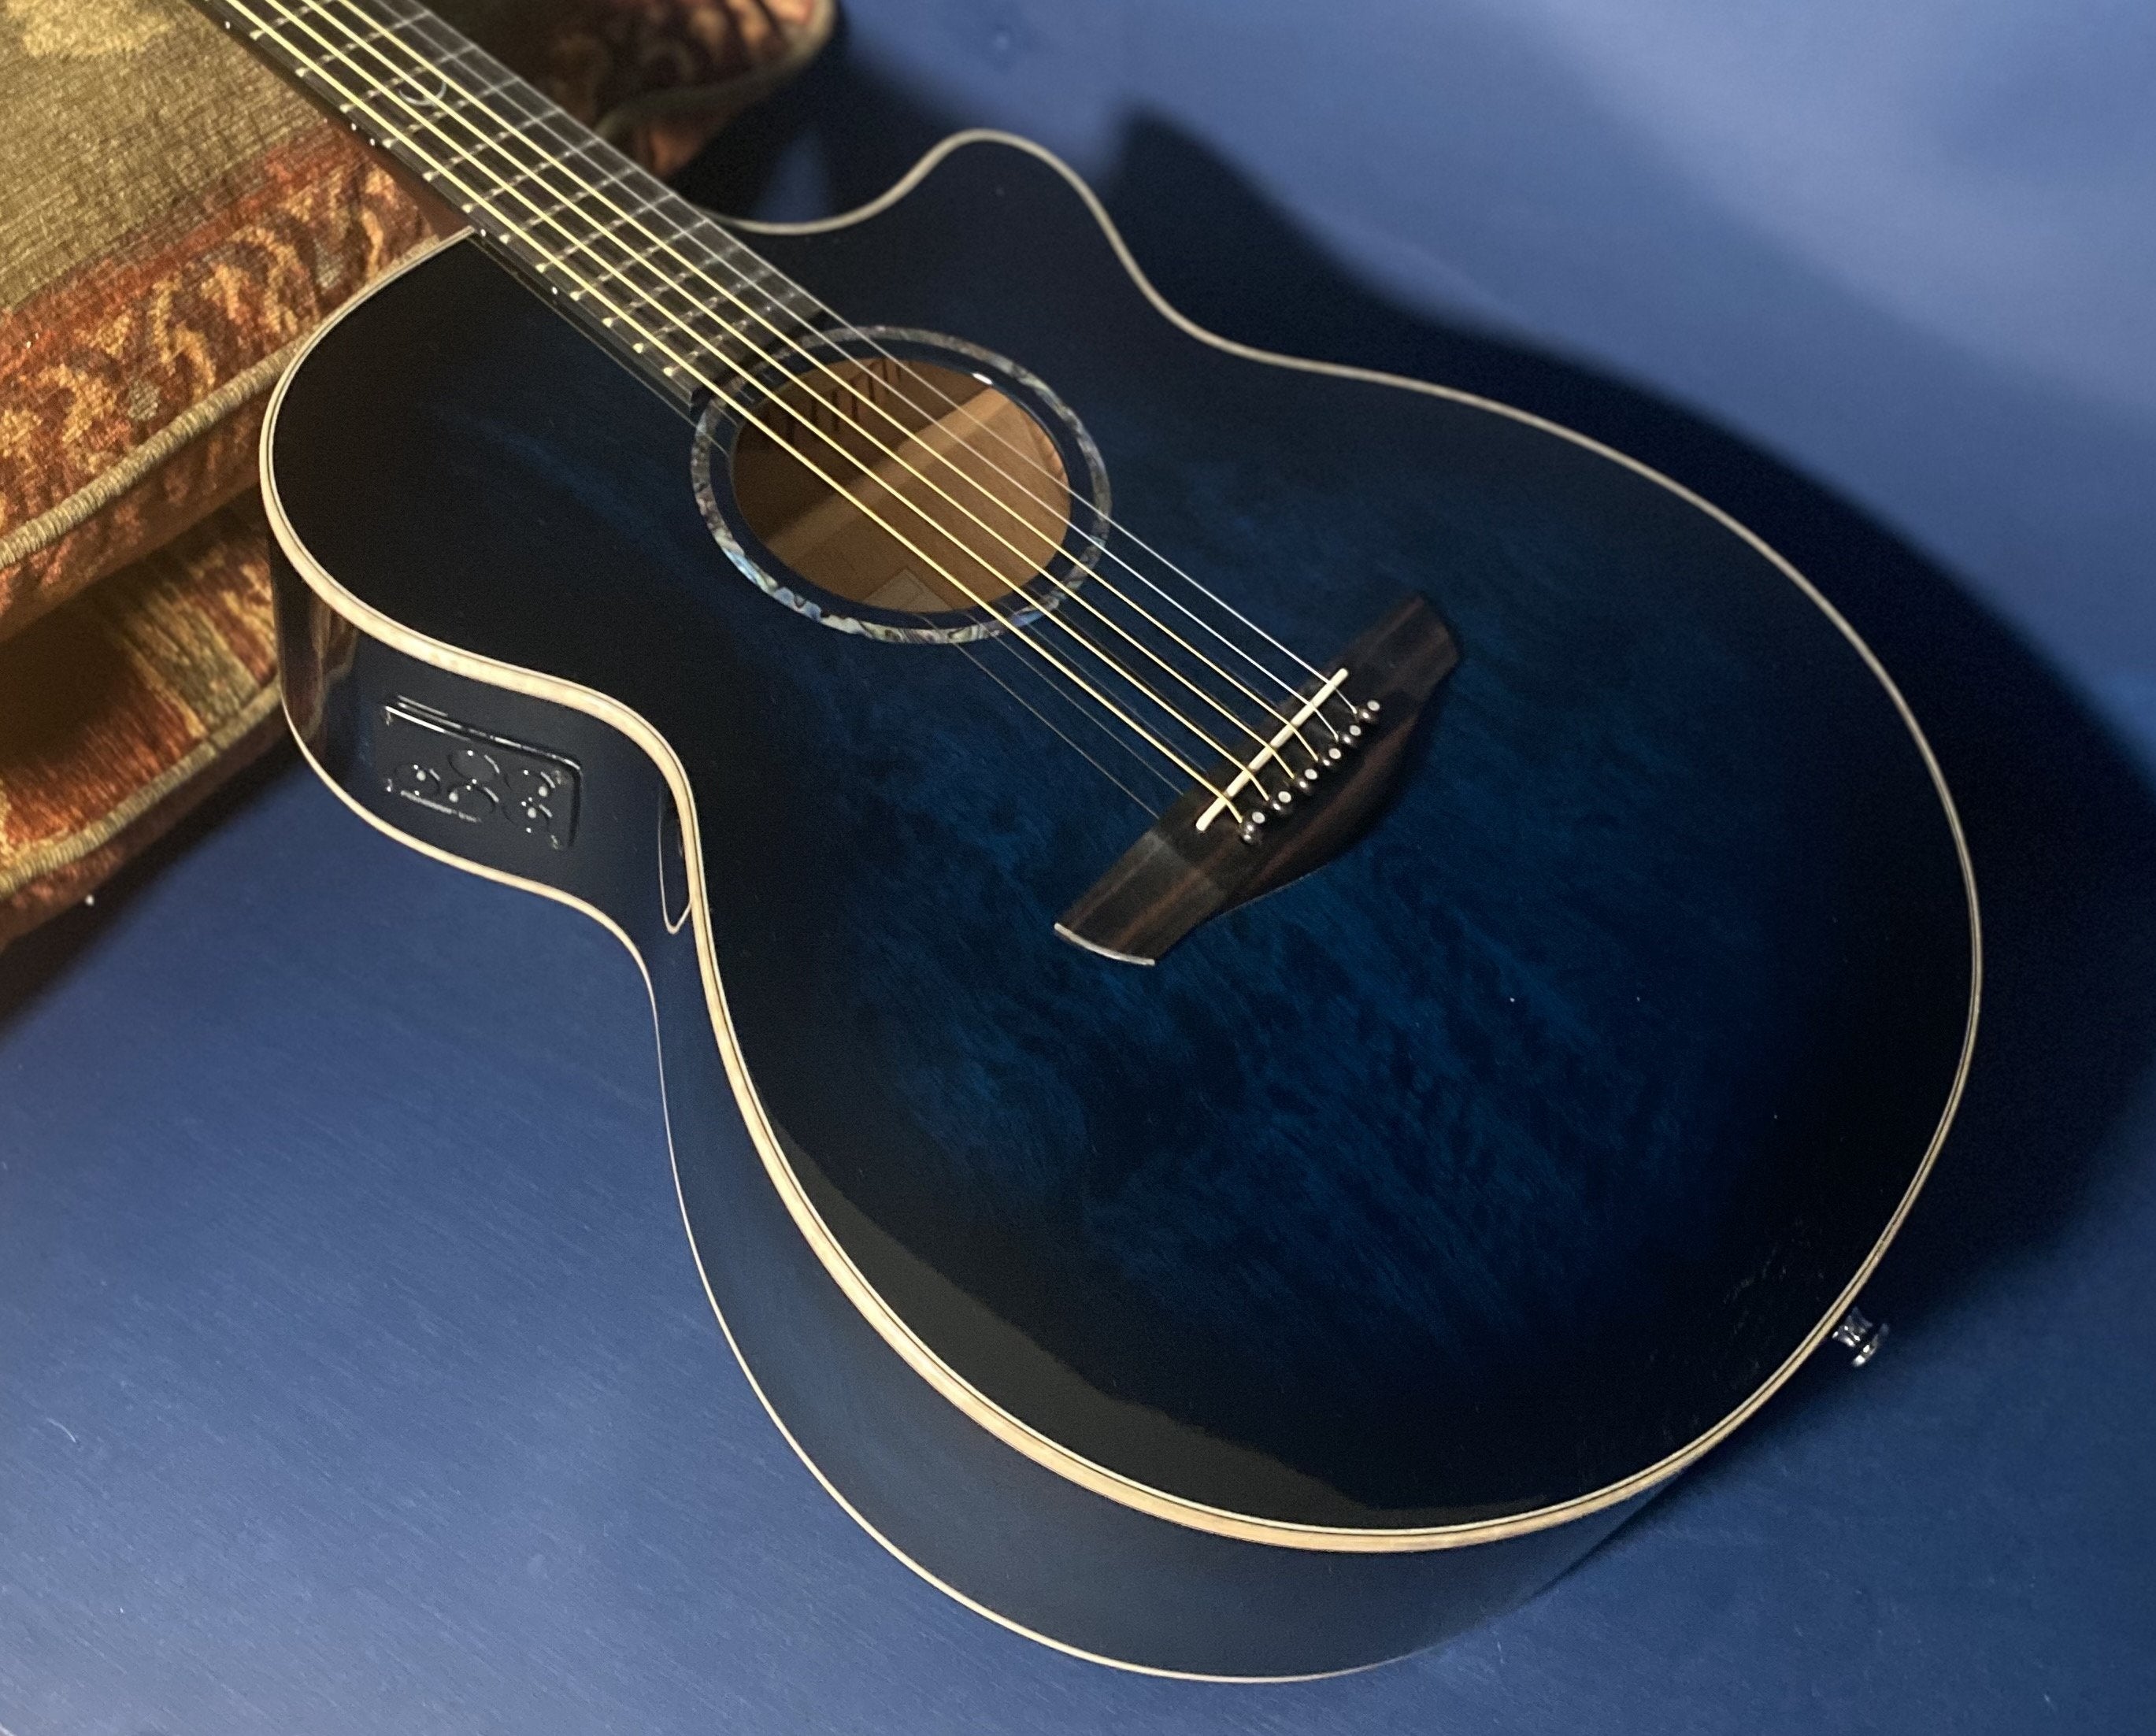 Faith FVBLM Blue Moon Venus Electro Acoustic Guitar [Reduced to clear!], Electro Acoustic Guitar for sale at Richards Guitars.